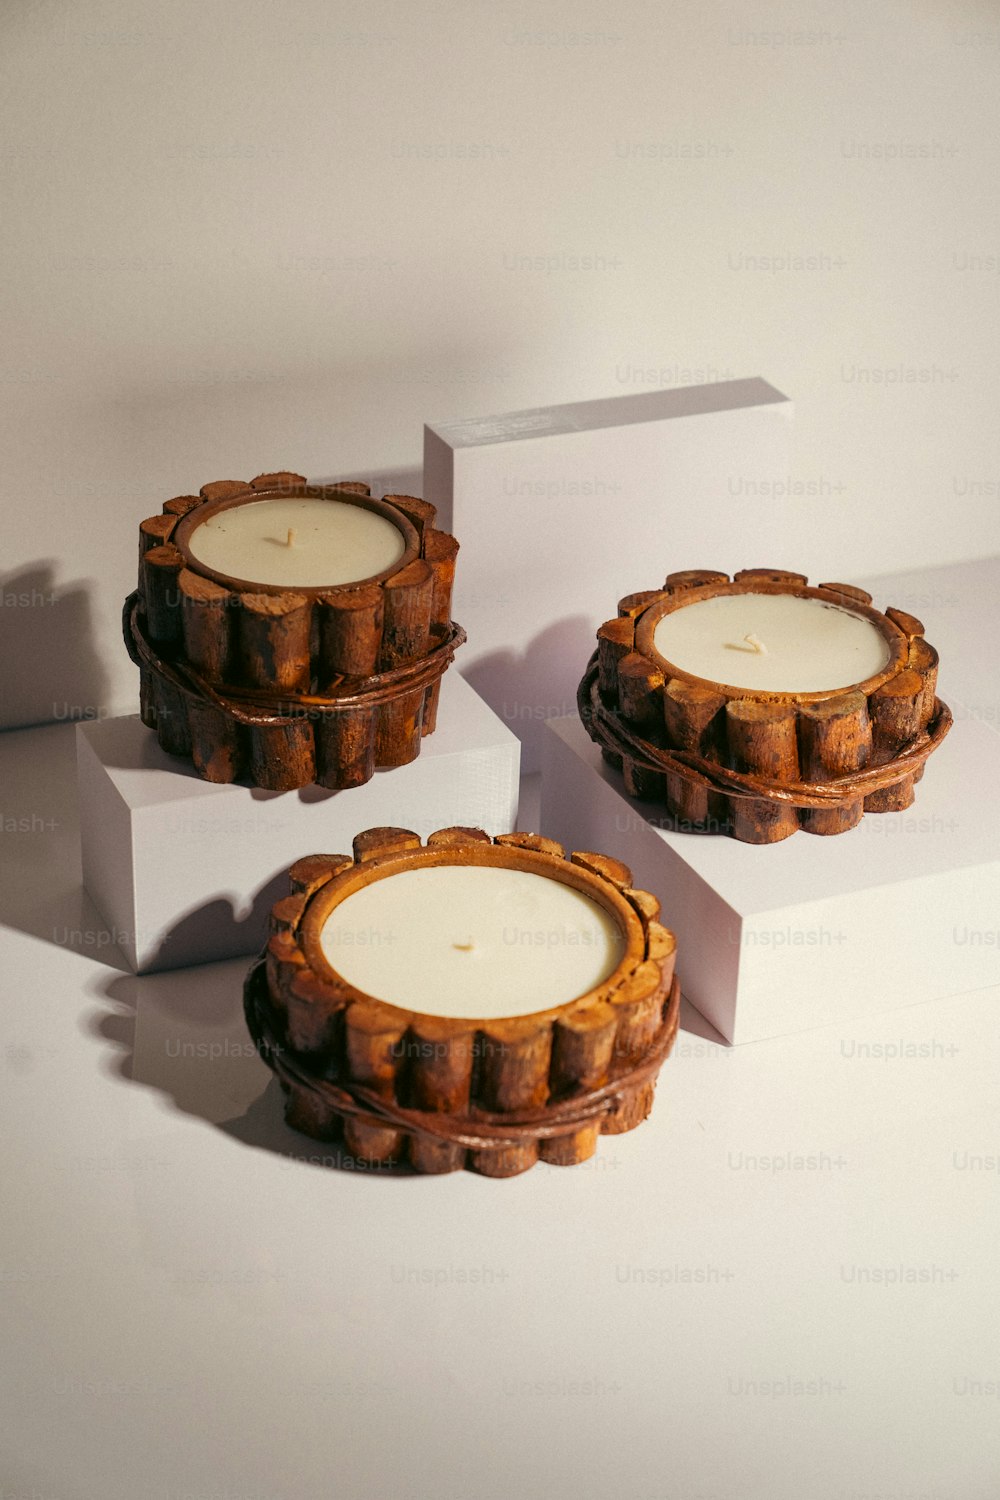 Tres velas sentadas encima de una caja blanca